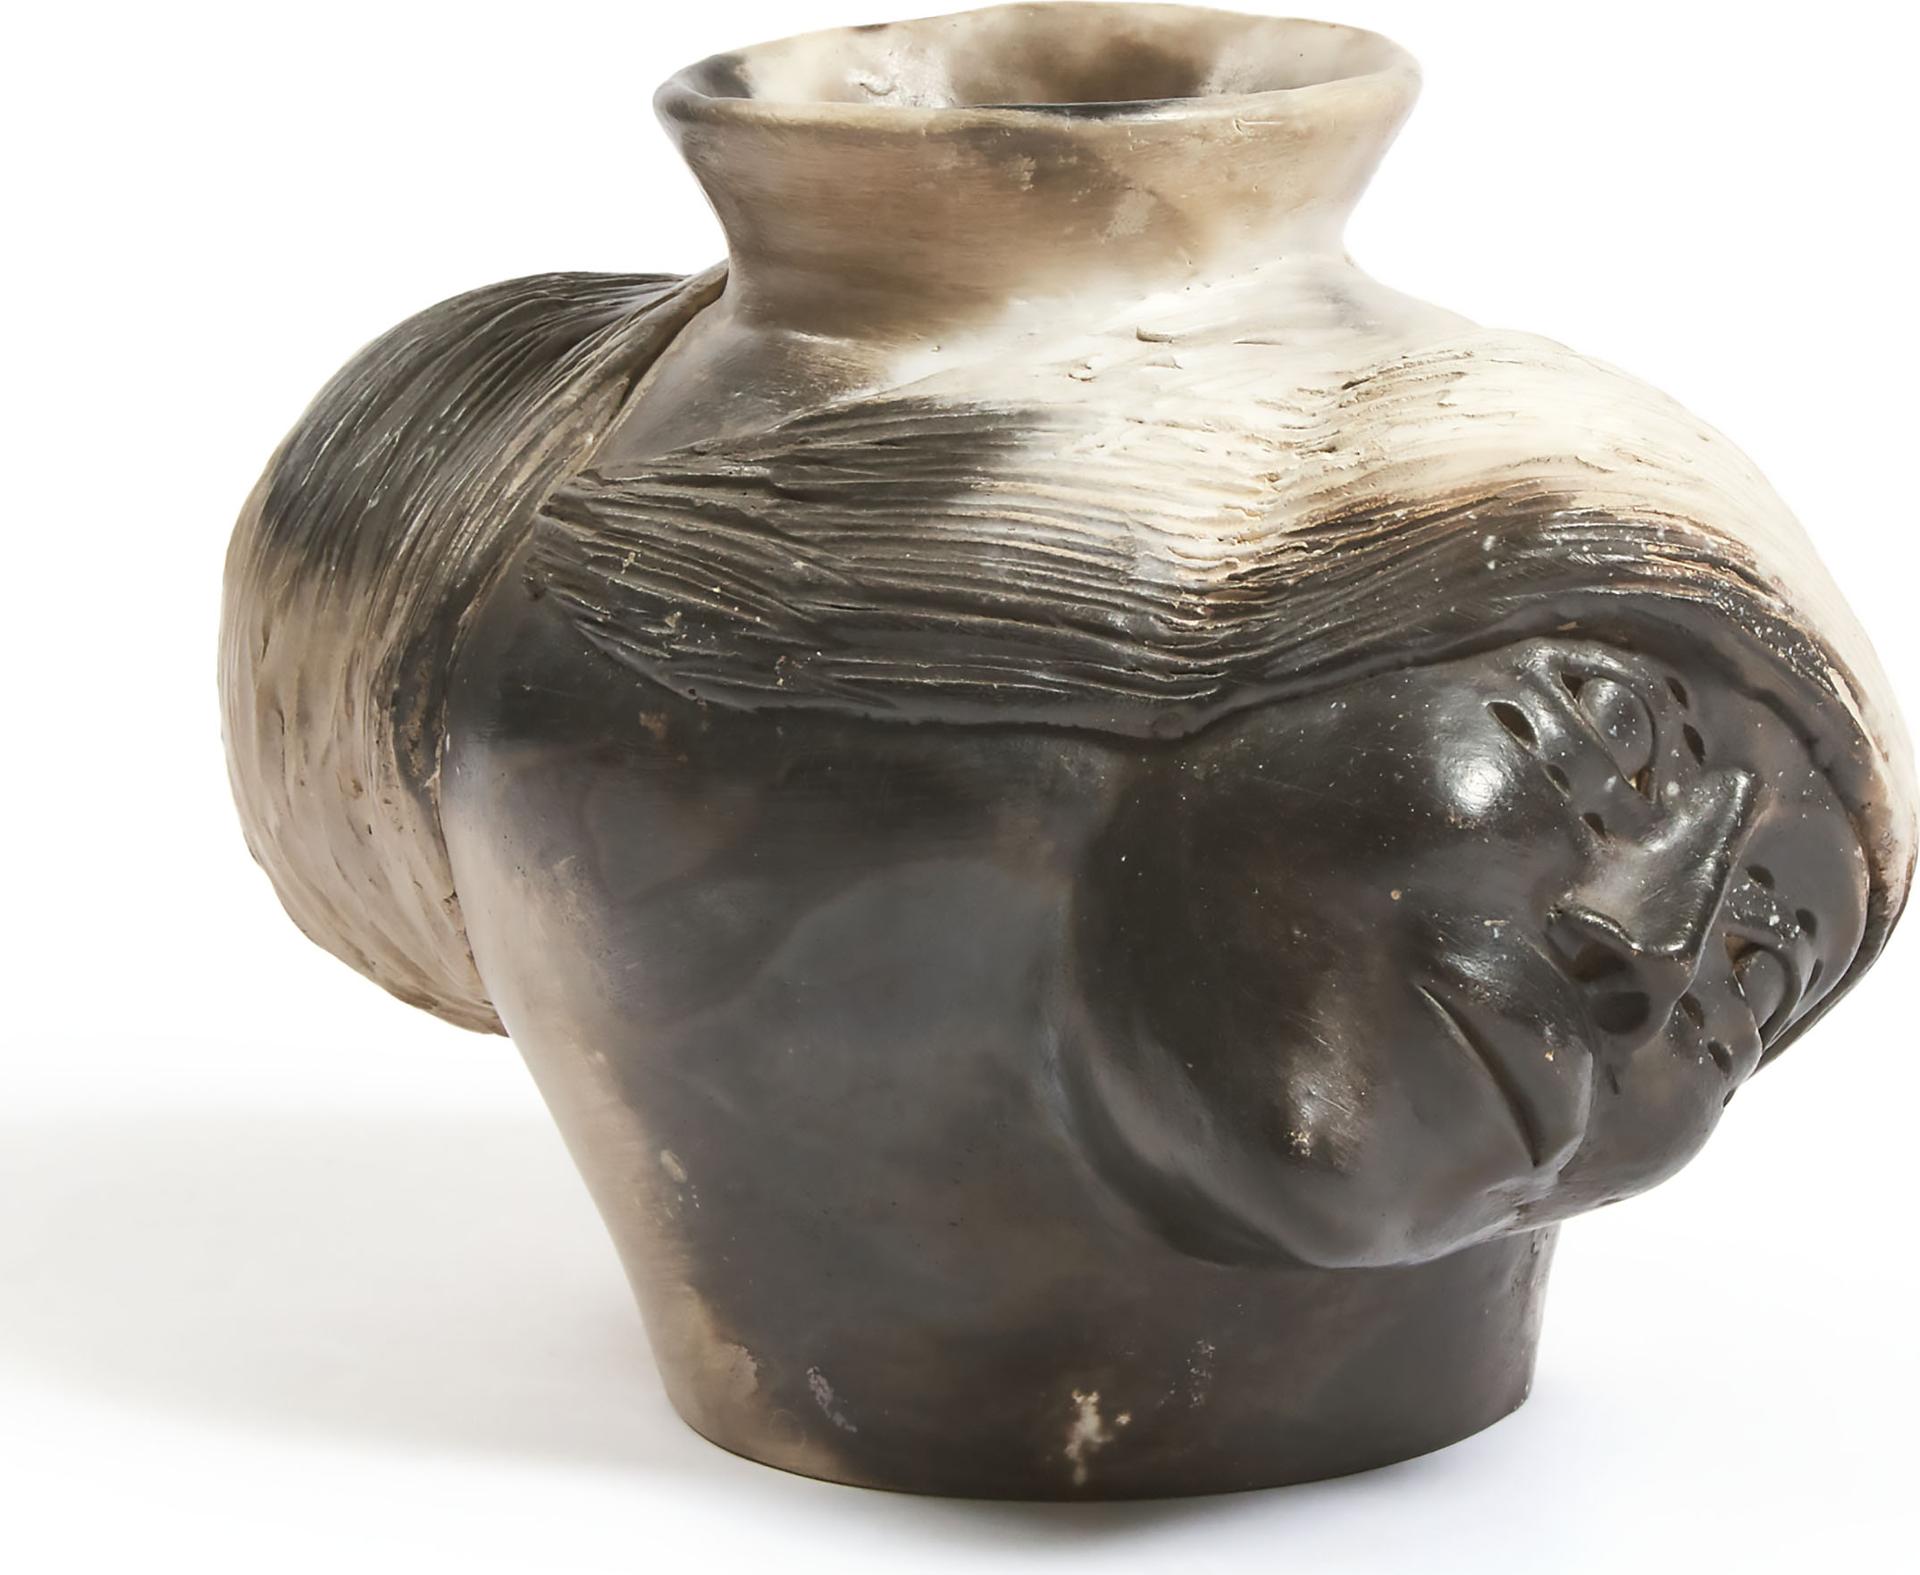 JOHN KUROK - Vase With Opposing Faces